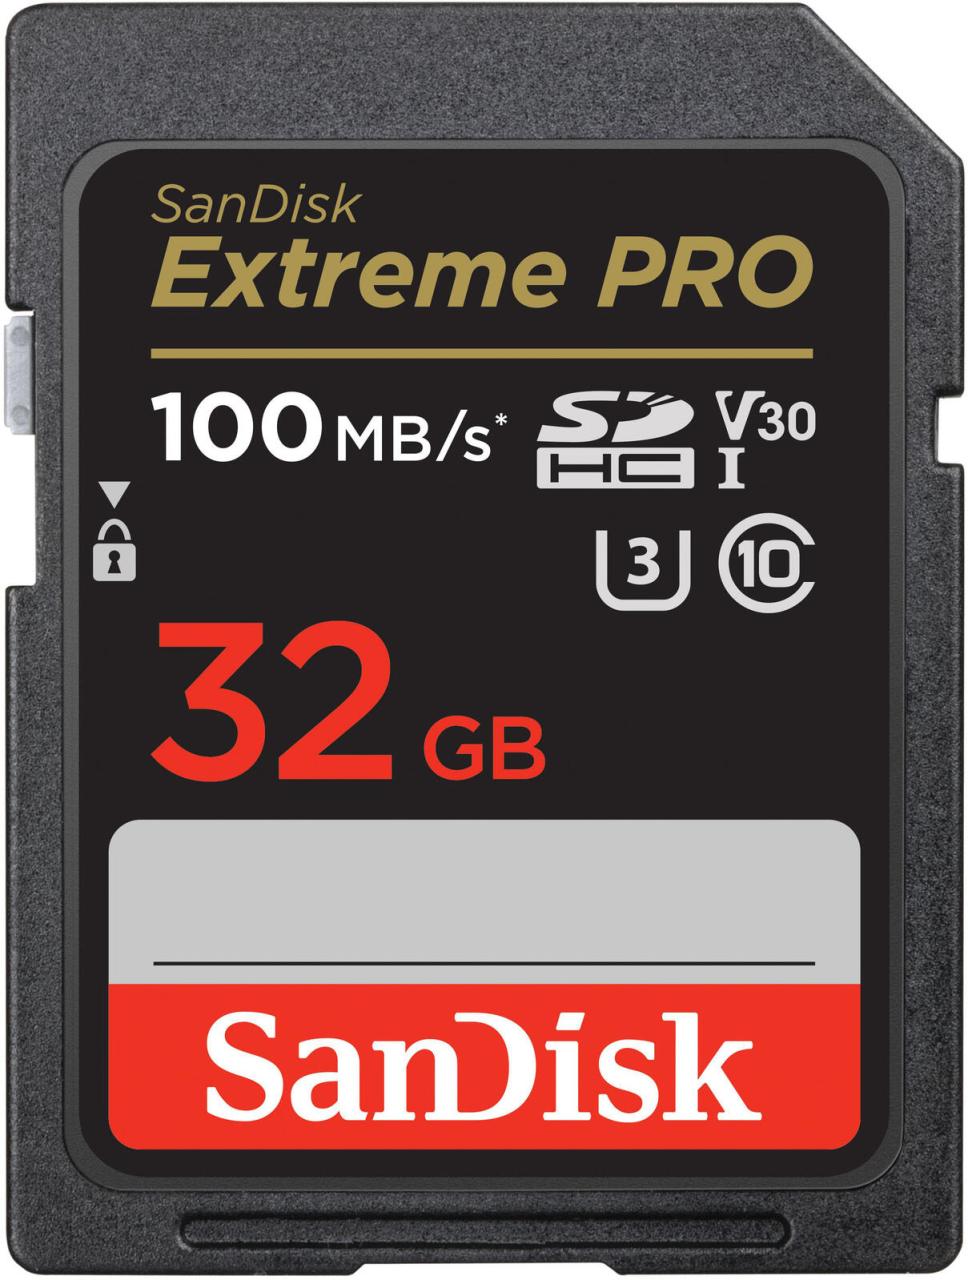 SanDisk ExtremePRO32GB SDHC MC Speicherkarte von Sandisk